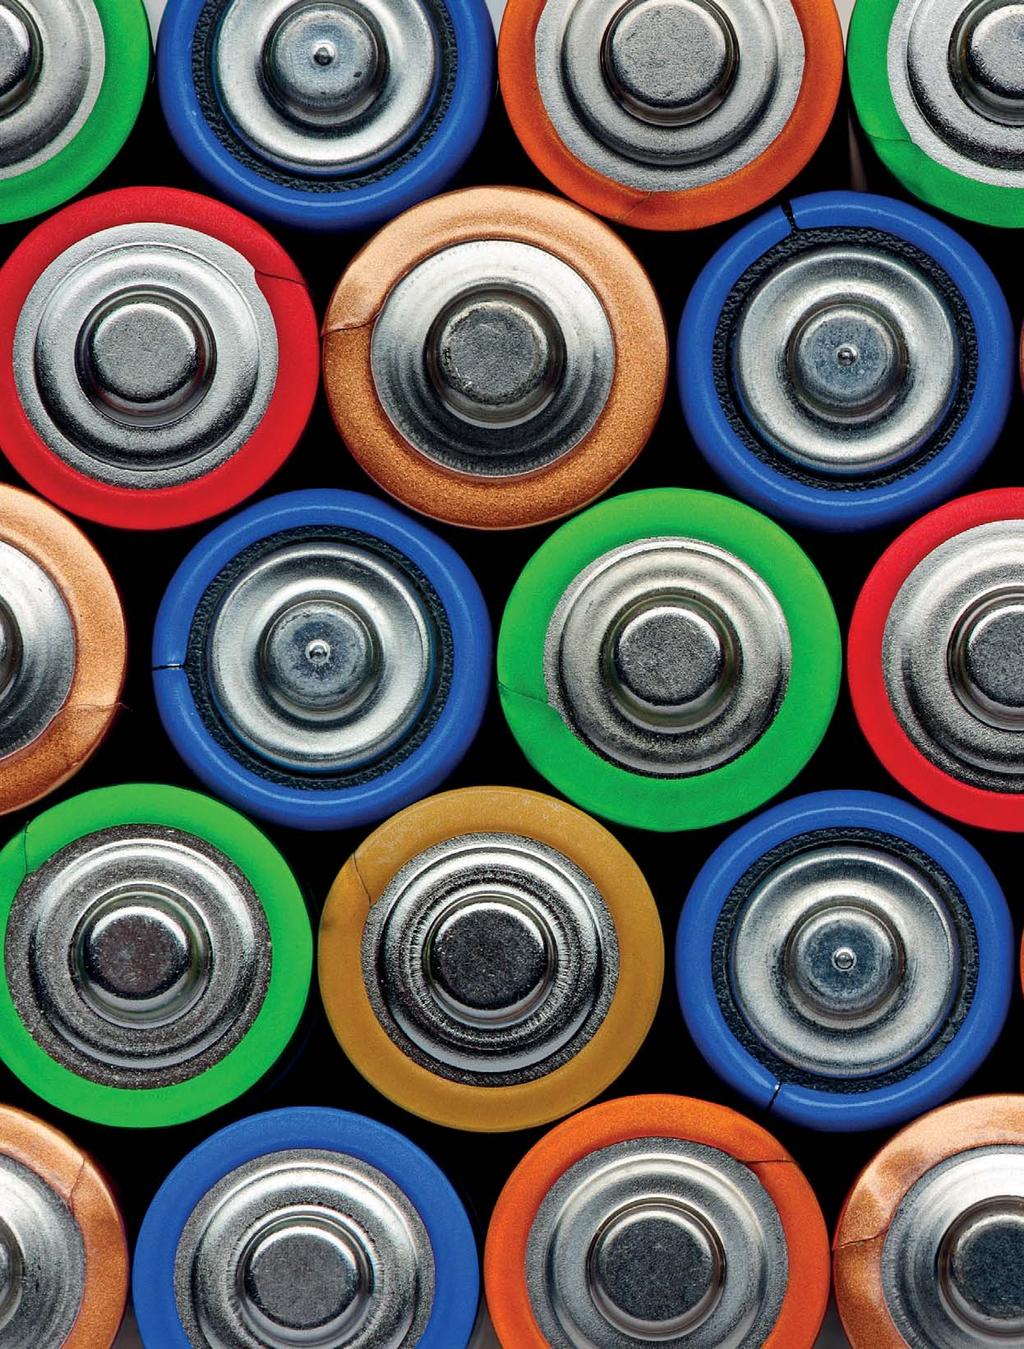 Vi er best på batterier Vi tar ditt batterisalg på alvor. Med en lang historie innen batterier og batterilading sitter vi på en stor kunnskap om bransjen og våre kunders behov.